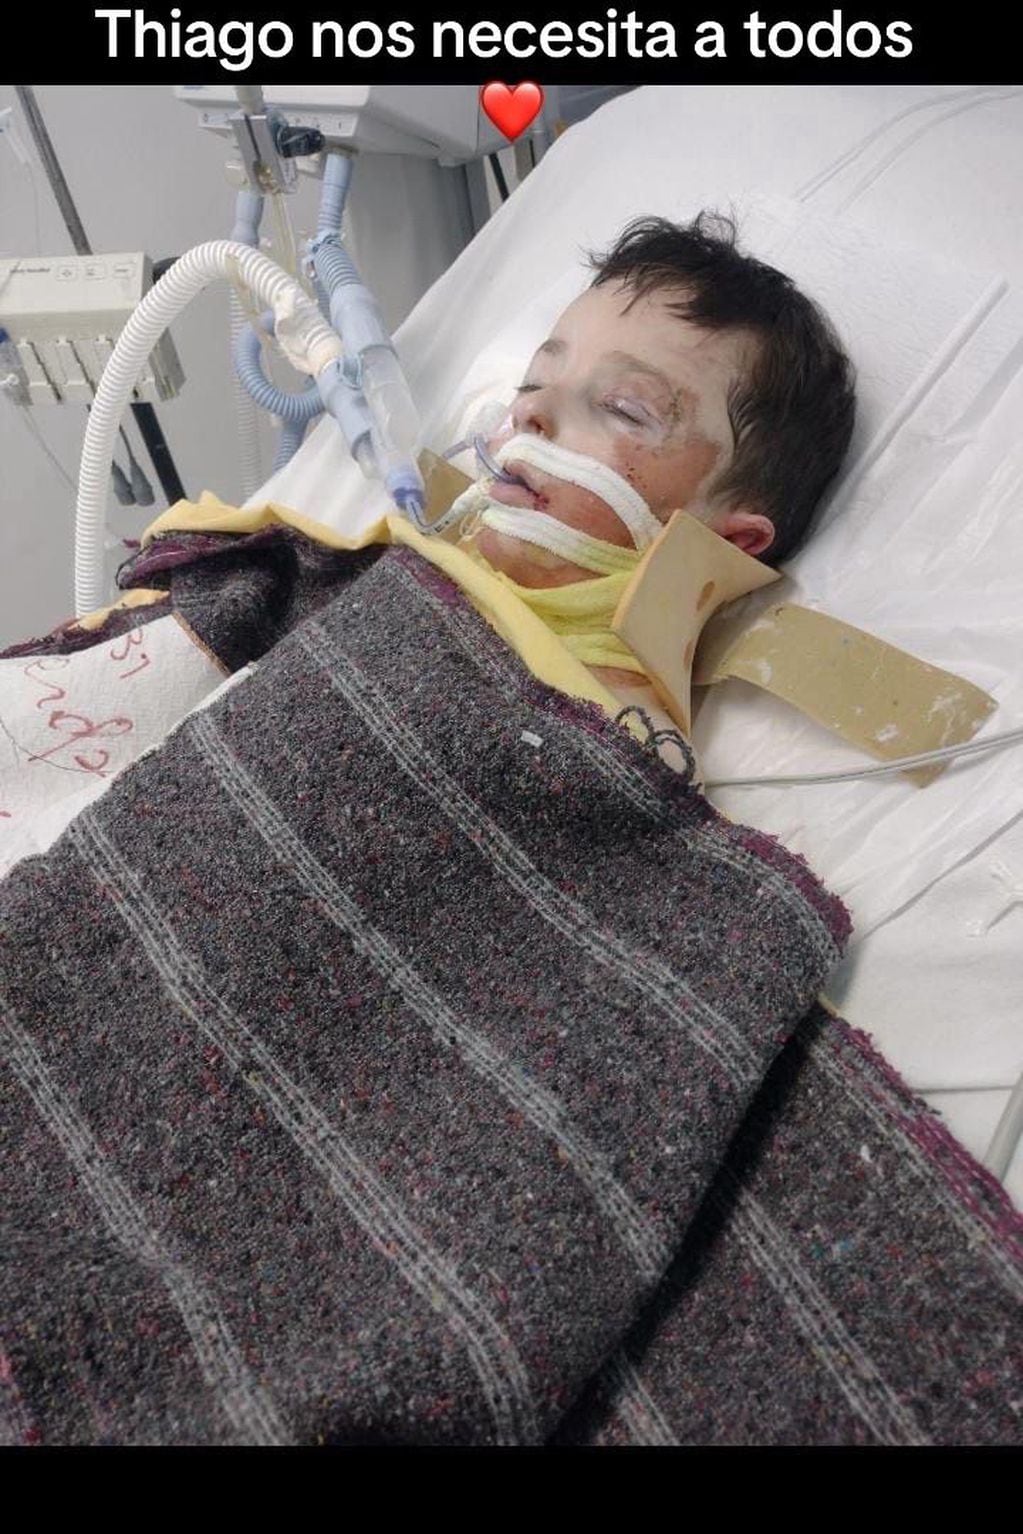 Thiago quedó cuadripléjico por un conductor que corría picadas y necesita ayuda para un costoso tratamiento. Foto: Gentileza Robando Sonrisas